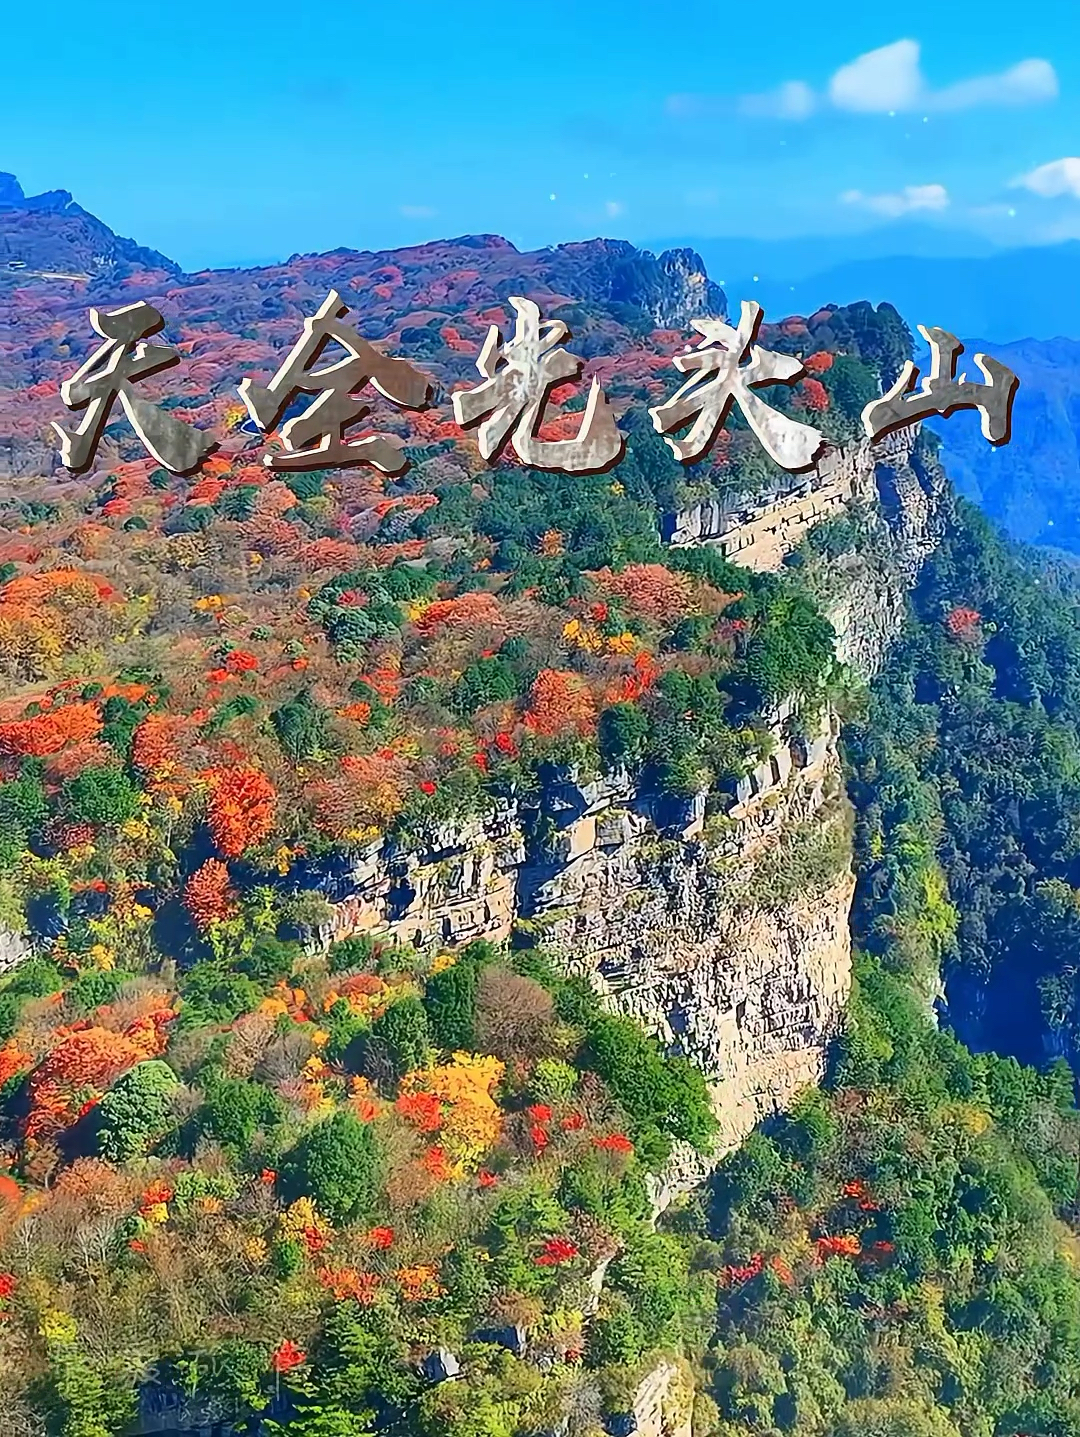 旺苍县红叶网红打卡地光头山，秋天真的是太美了！你找到了吗？我在这等你 #天全光头山 #最美枫叶红 #